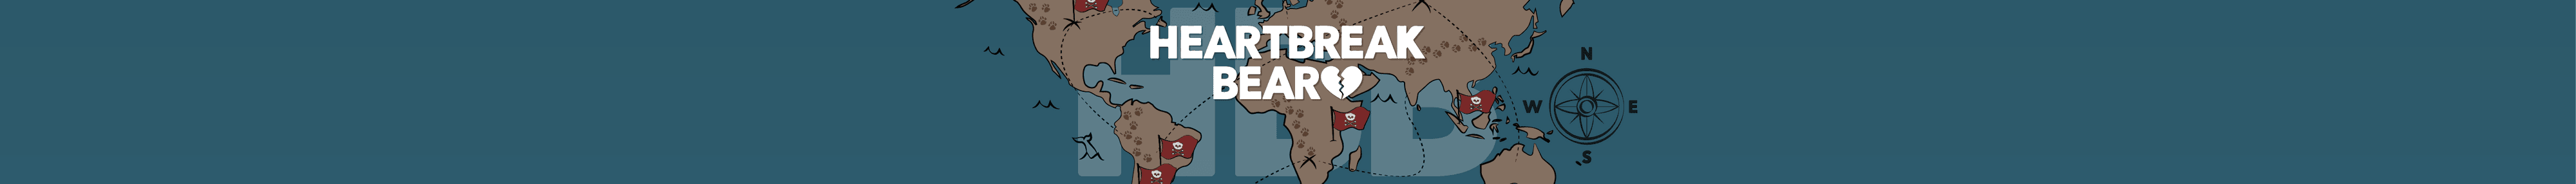 Heartbreak_Bear_Official 橫幅